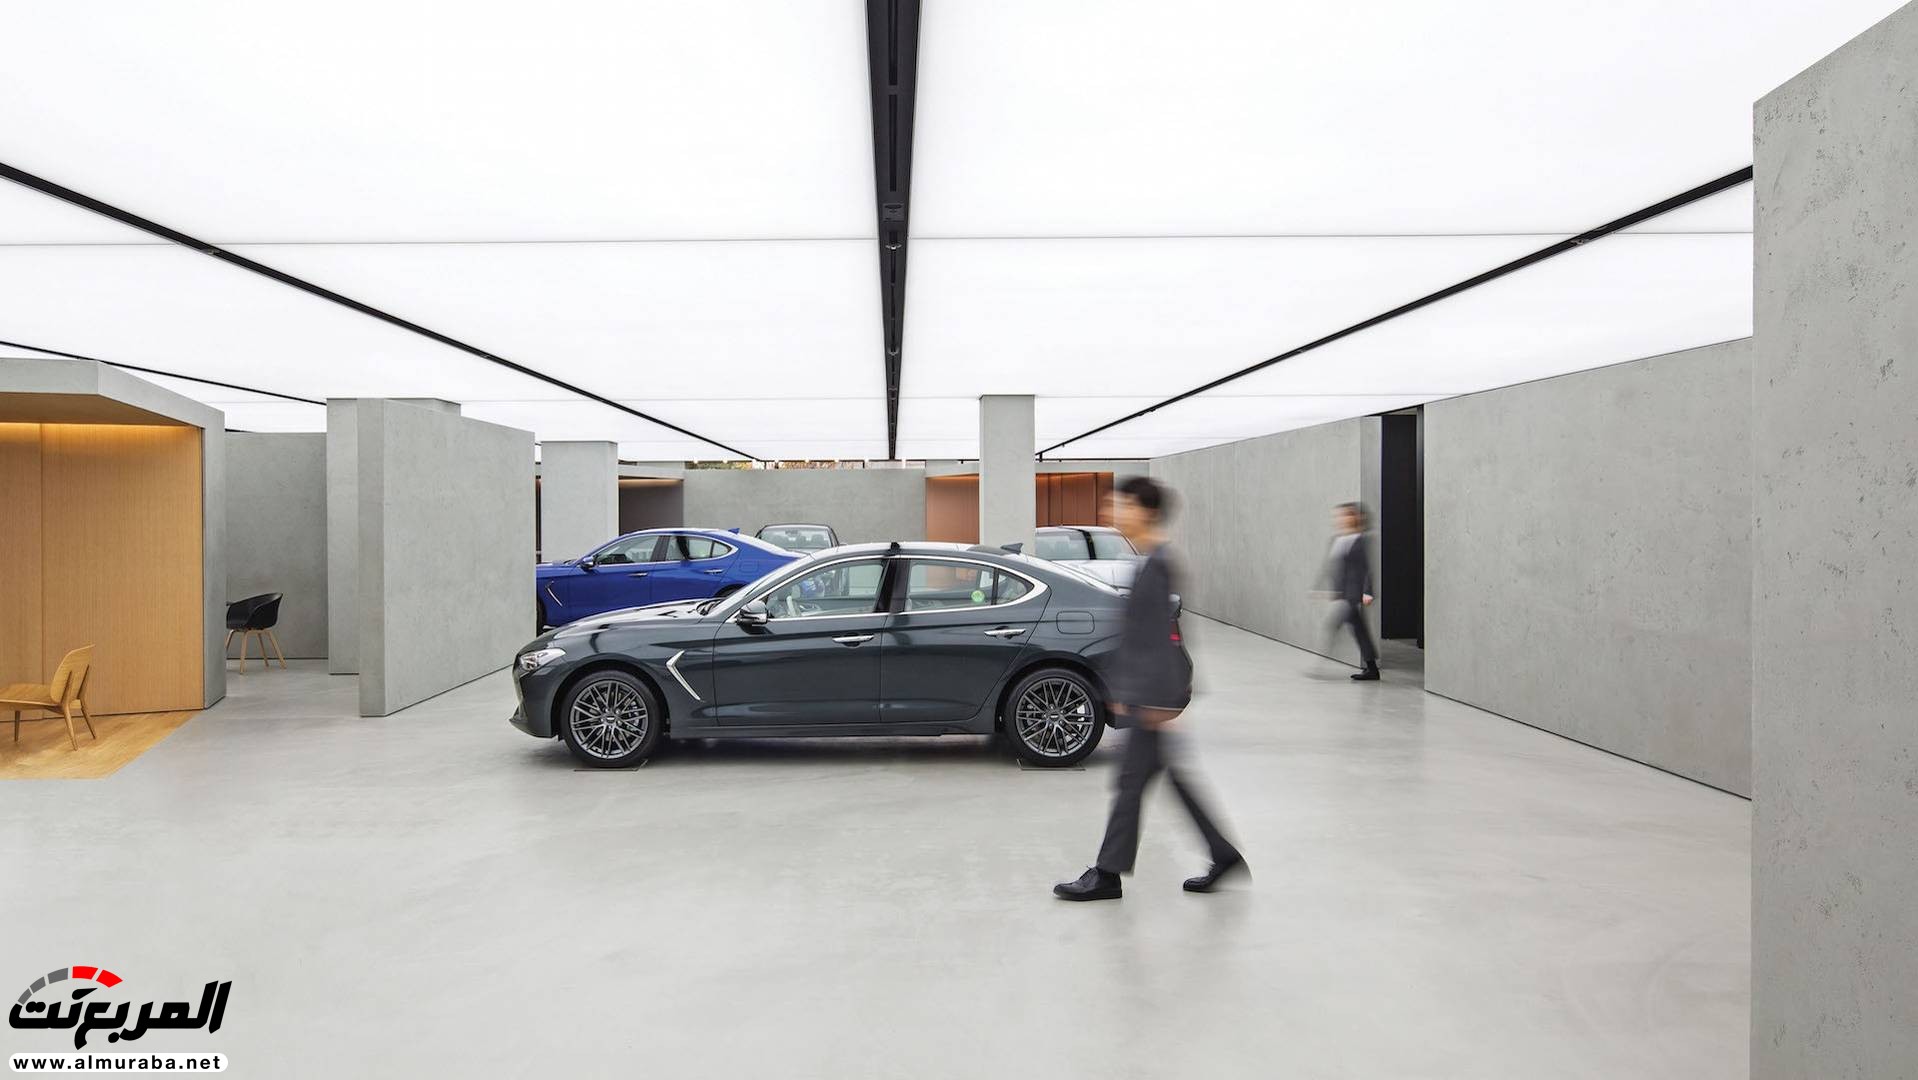 "بالصور" جينيسيس تفتتح رسمياً أول صالة عرض متكاملة لسياراتها في العالم 17